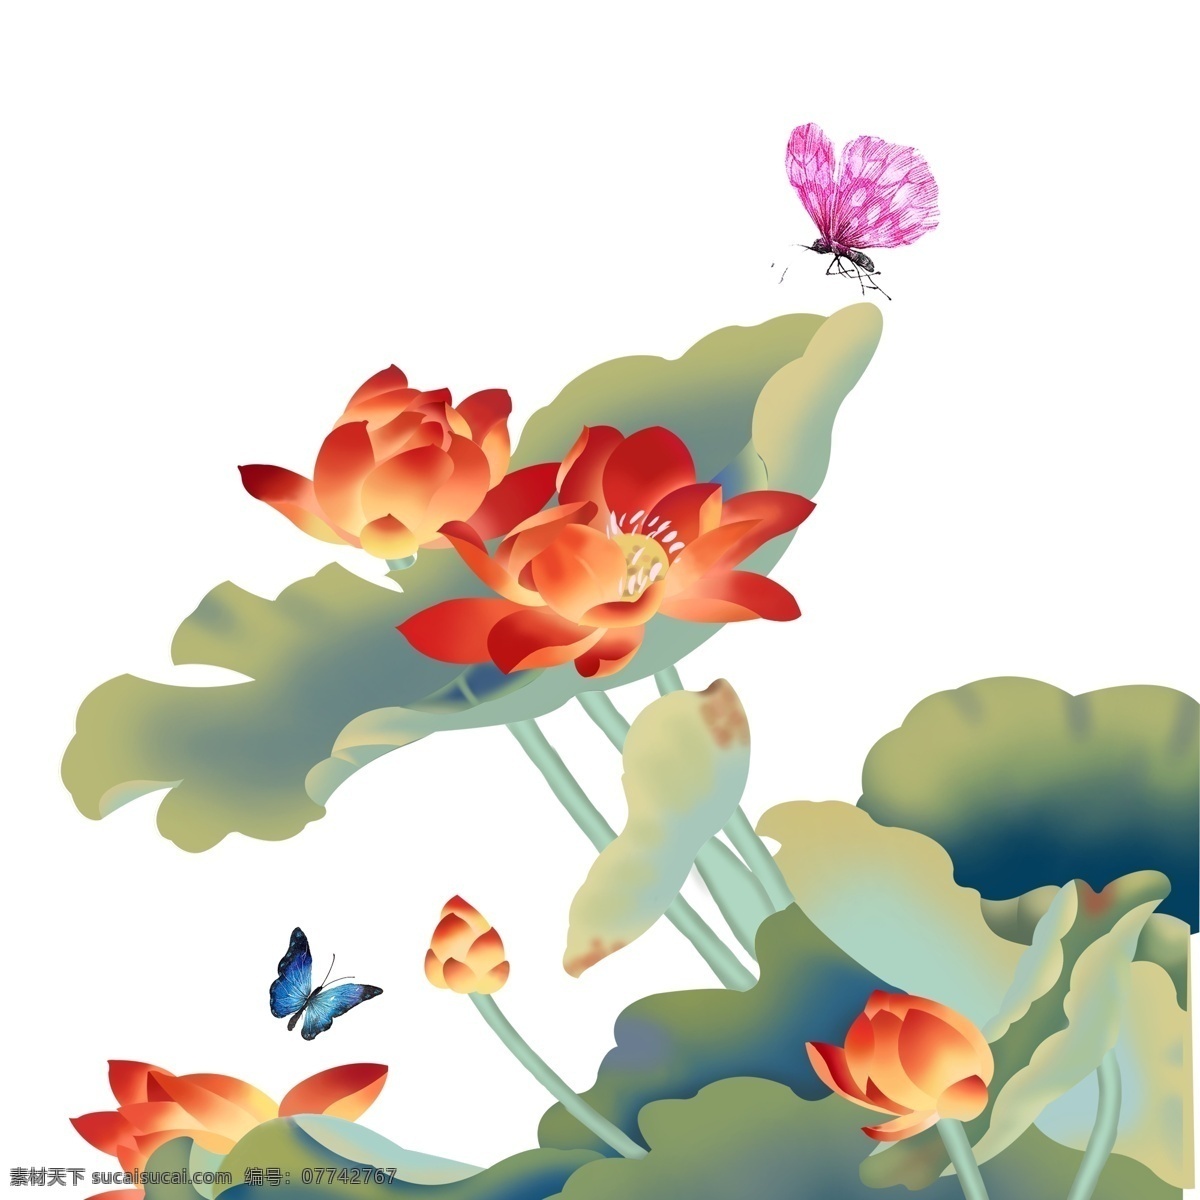 红莲 戏 碟 手绘 商用 元素 复古 写实 植物花卉 蝴蝶 插画